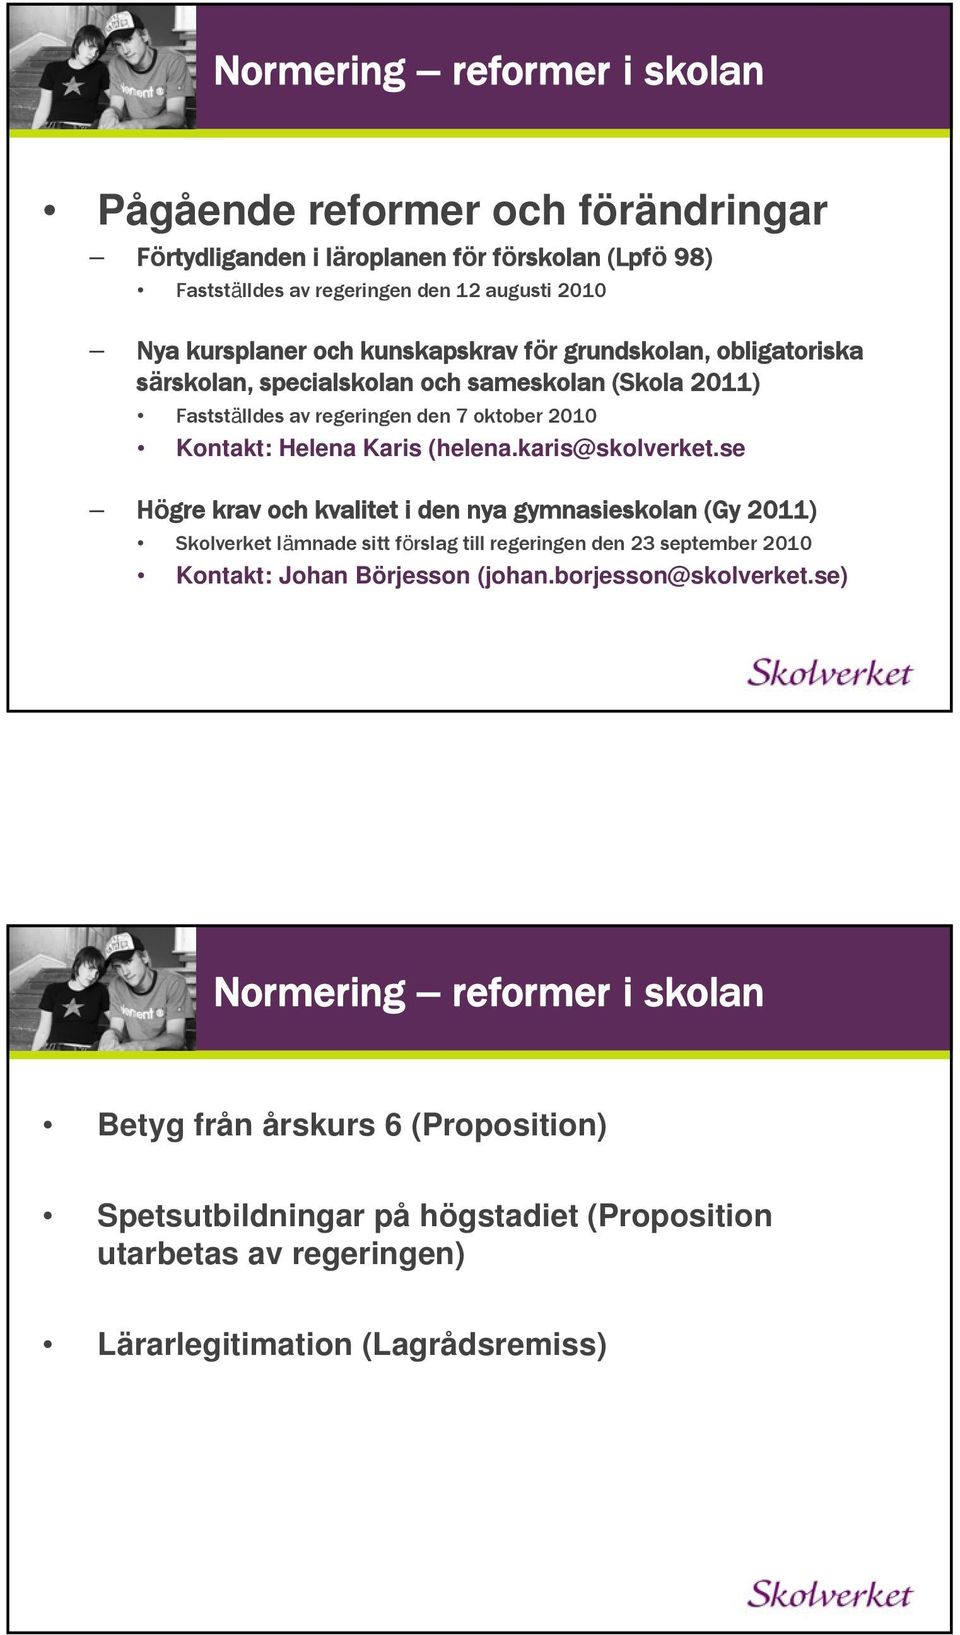 karis@skolverket.se Högre krav och kvalitet i den nya gymnasieskolan (Gy 2011) Skolverket lämnade sitt förslag till regeringen den 23 september 2010 Kontakt: Johan Börjesson (johan.